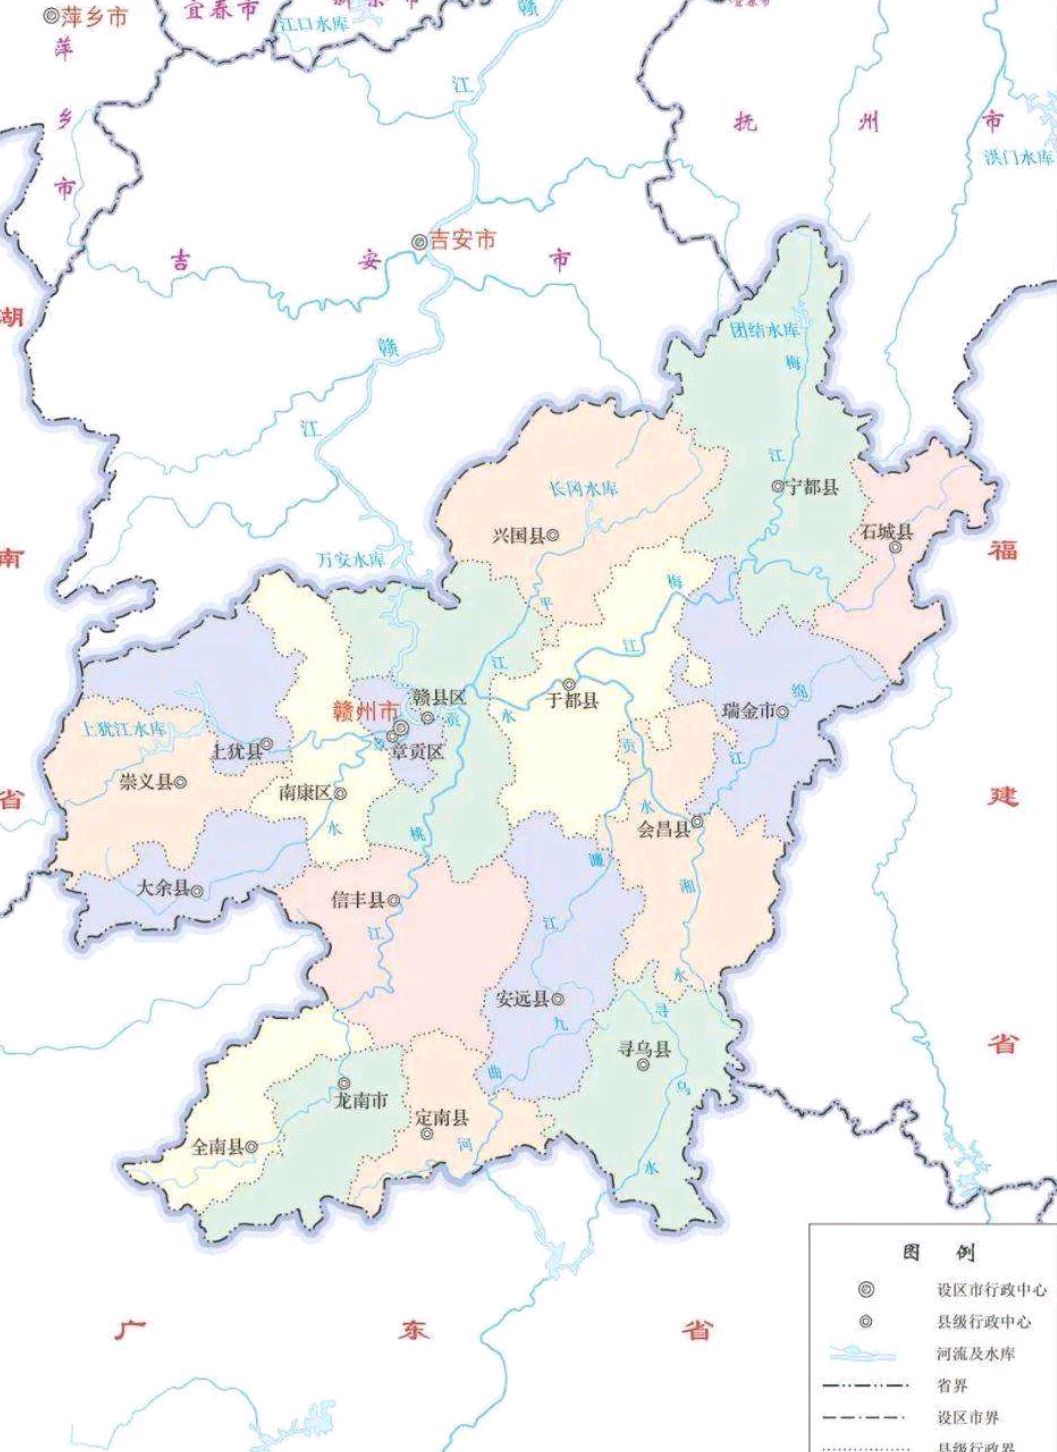 2021年赣州18个区县gdp:章贡区第1,龙南市破200亿,全南县第17